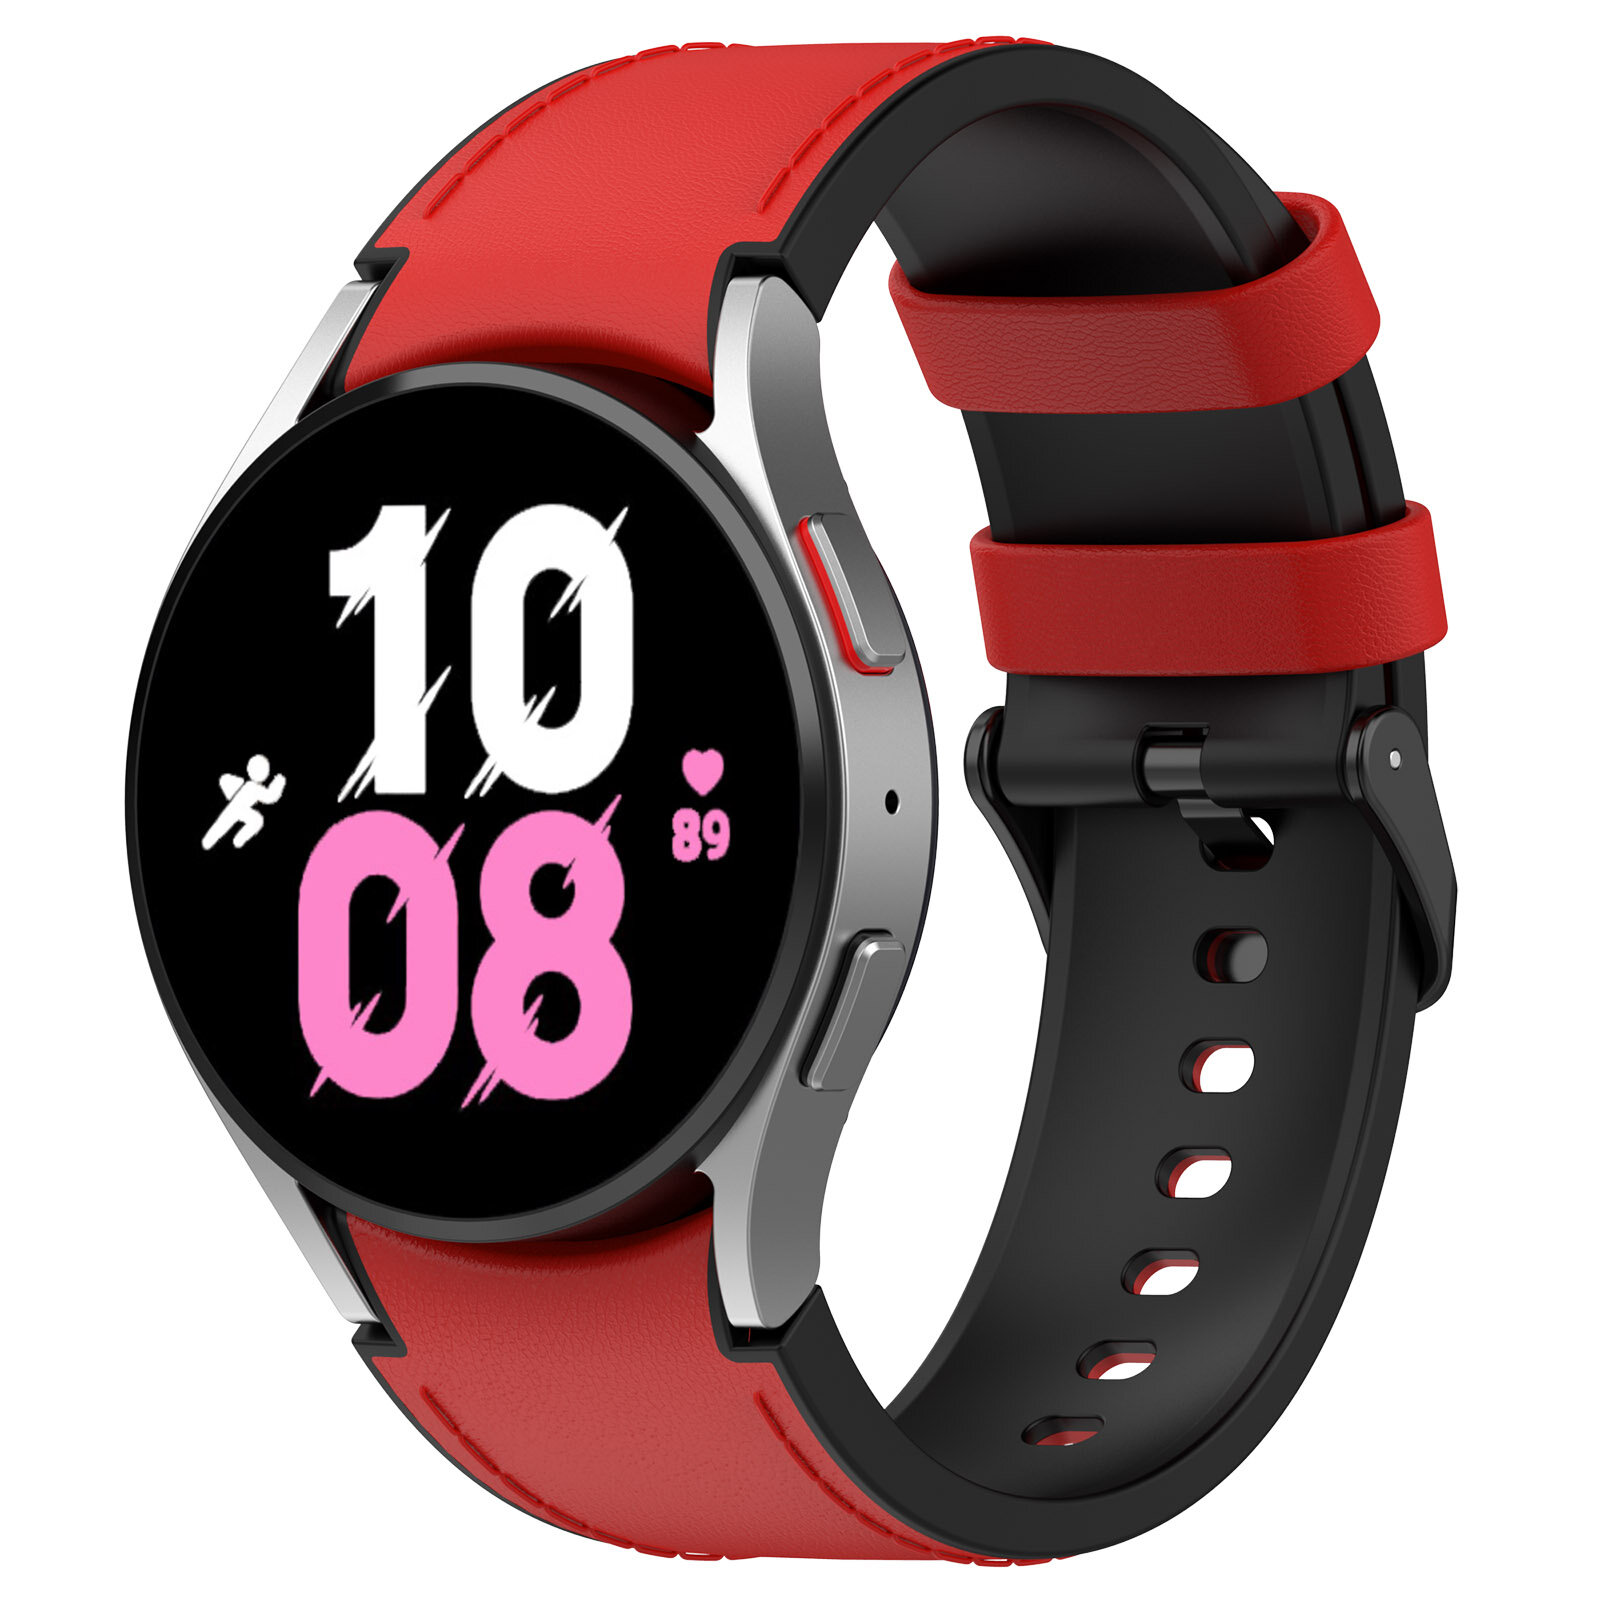 Двухцветный кожаный ремешок для Samsung Galaxy Watch, размер S, черно-красный, черная пряжка